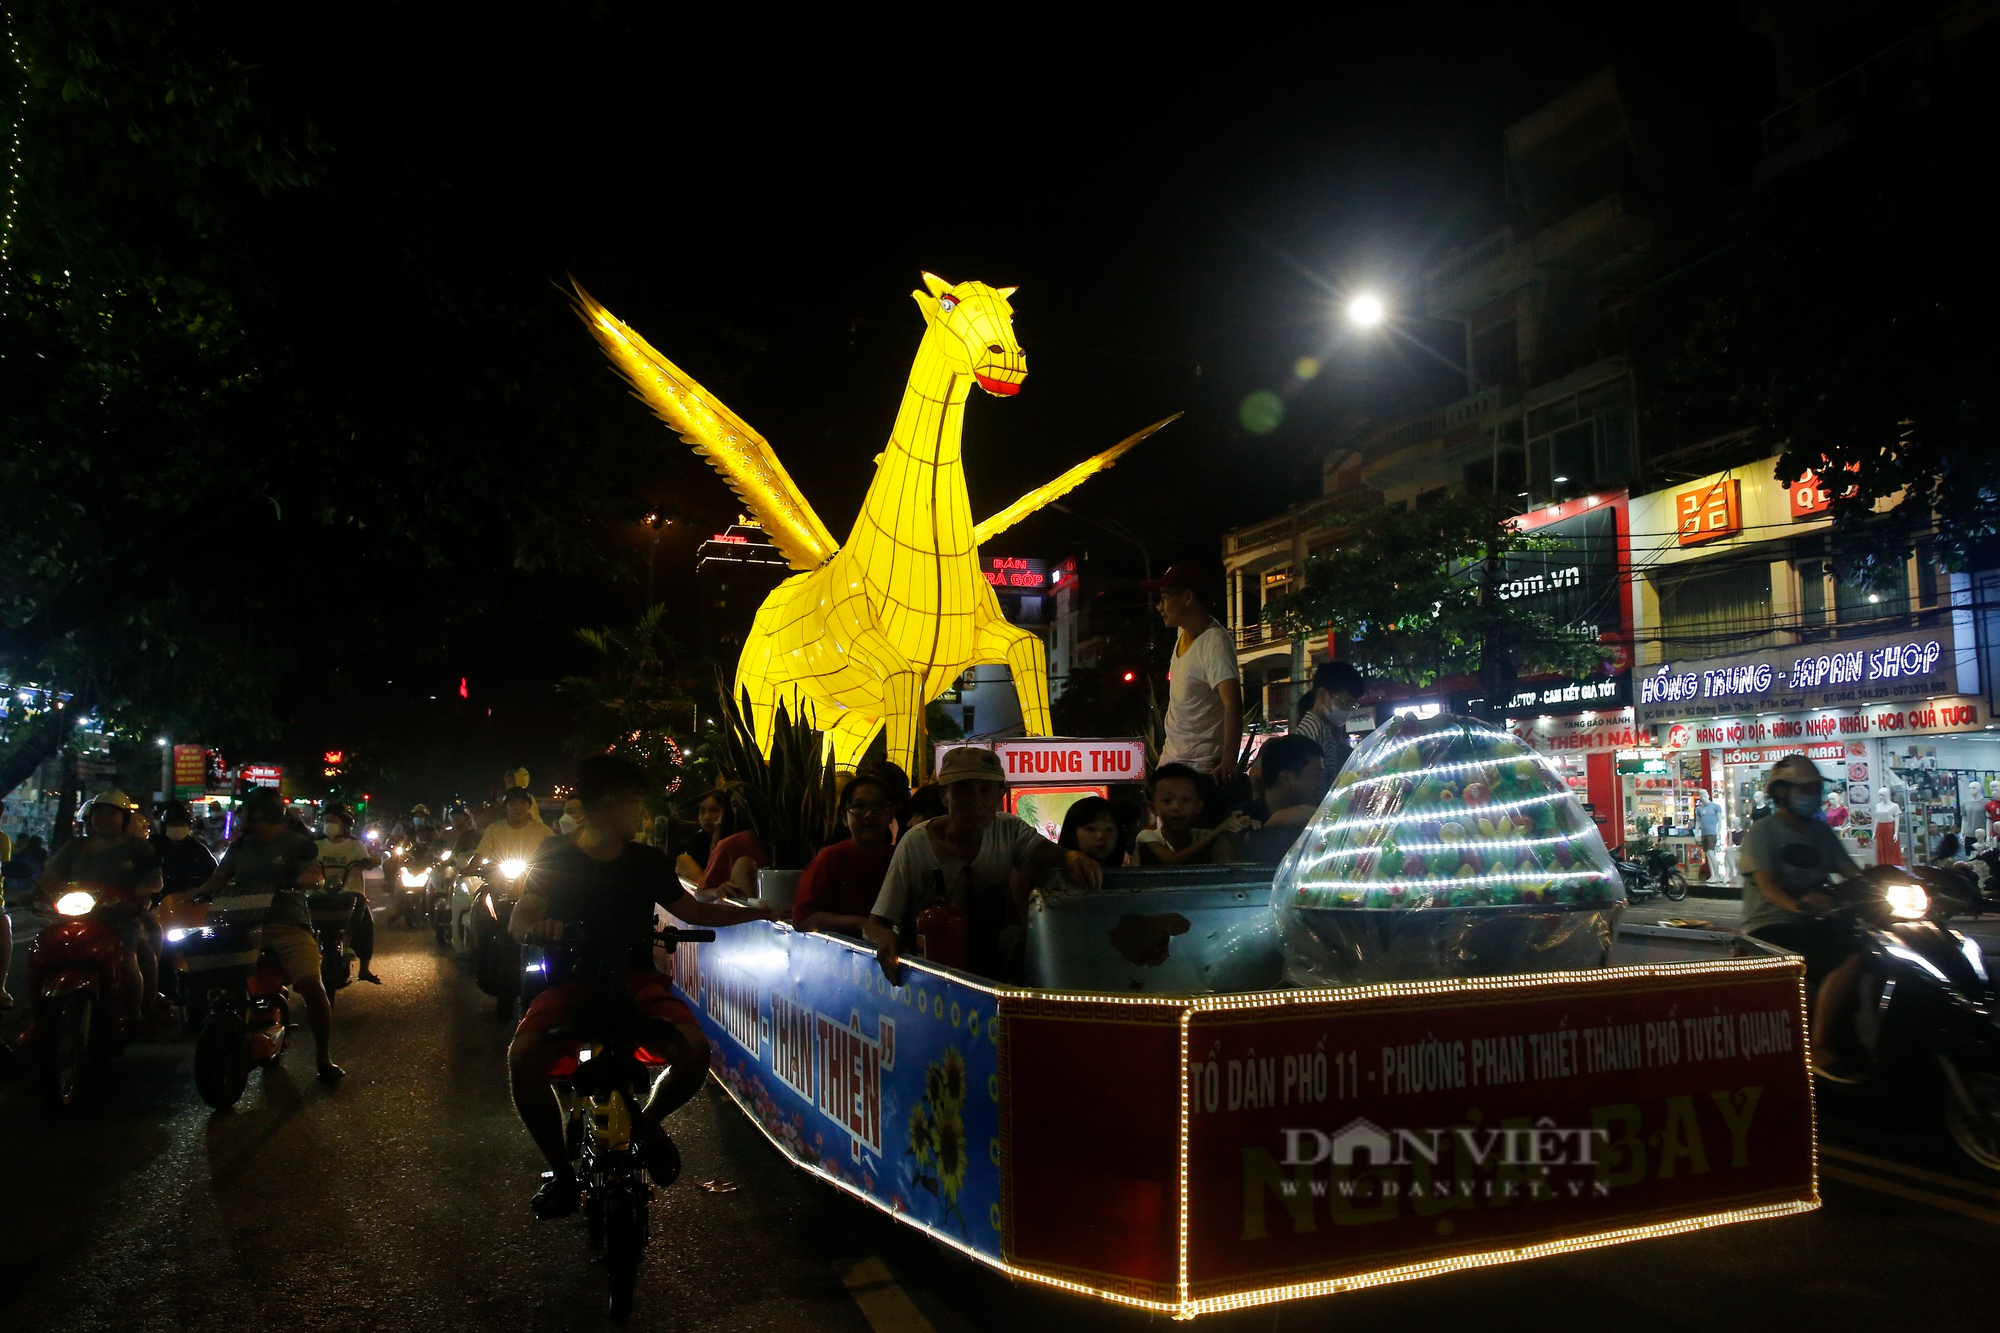 Mãn nhãn những mô hình đèn Trung thu khổng lồ được diễu hành trên đường phố Tuyên Quang - Ảnh 4.